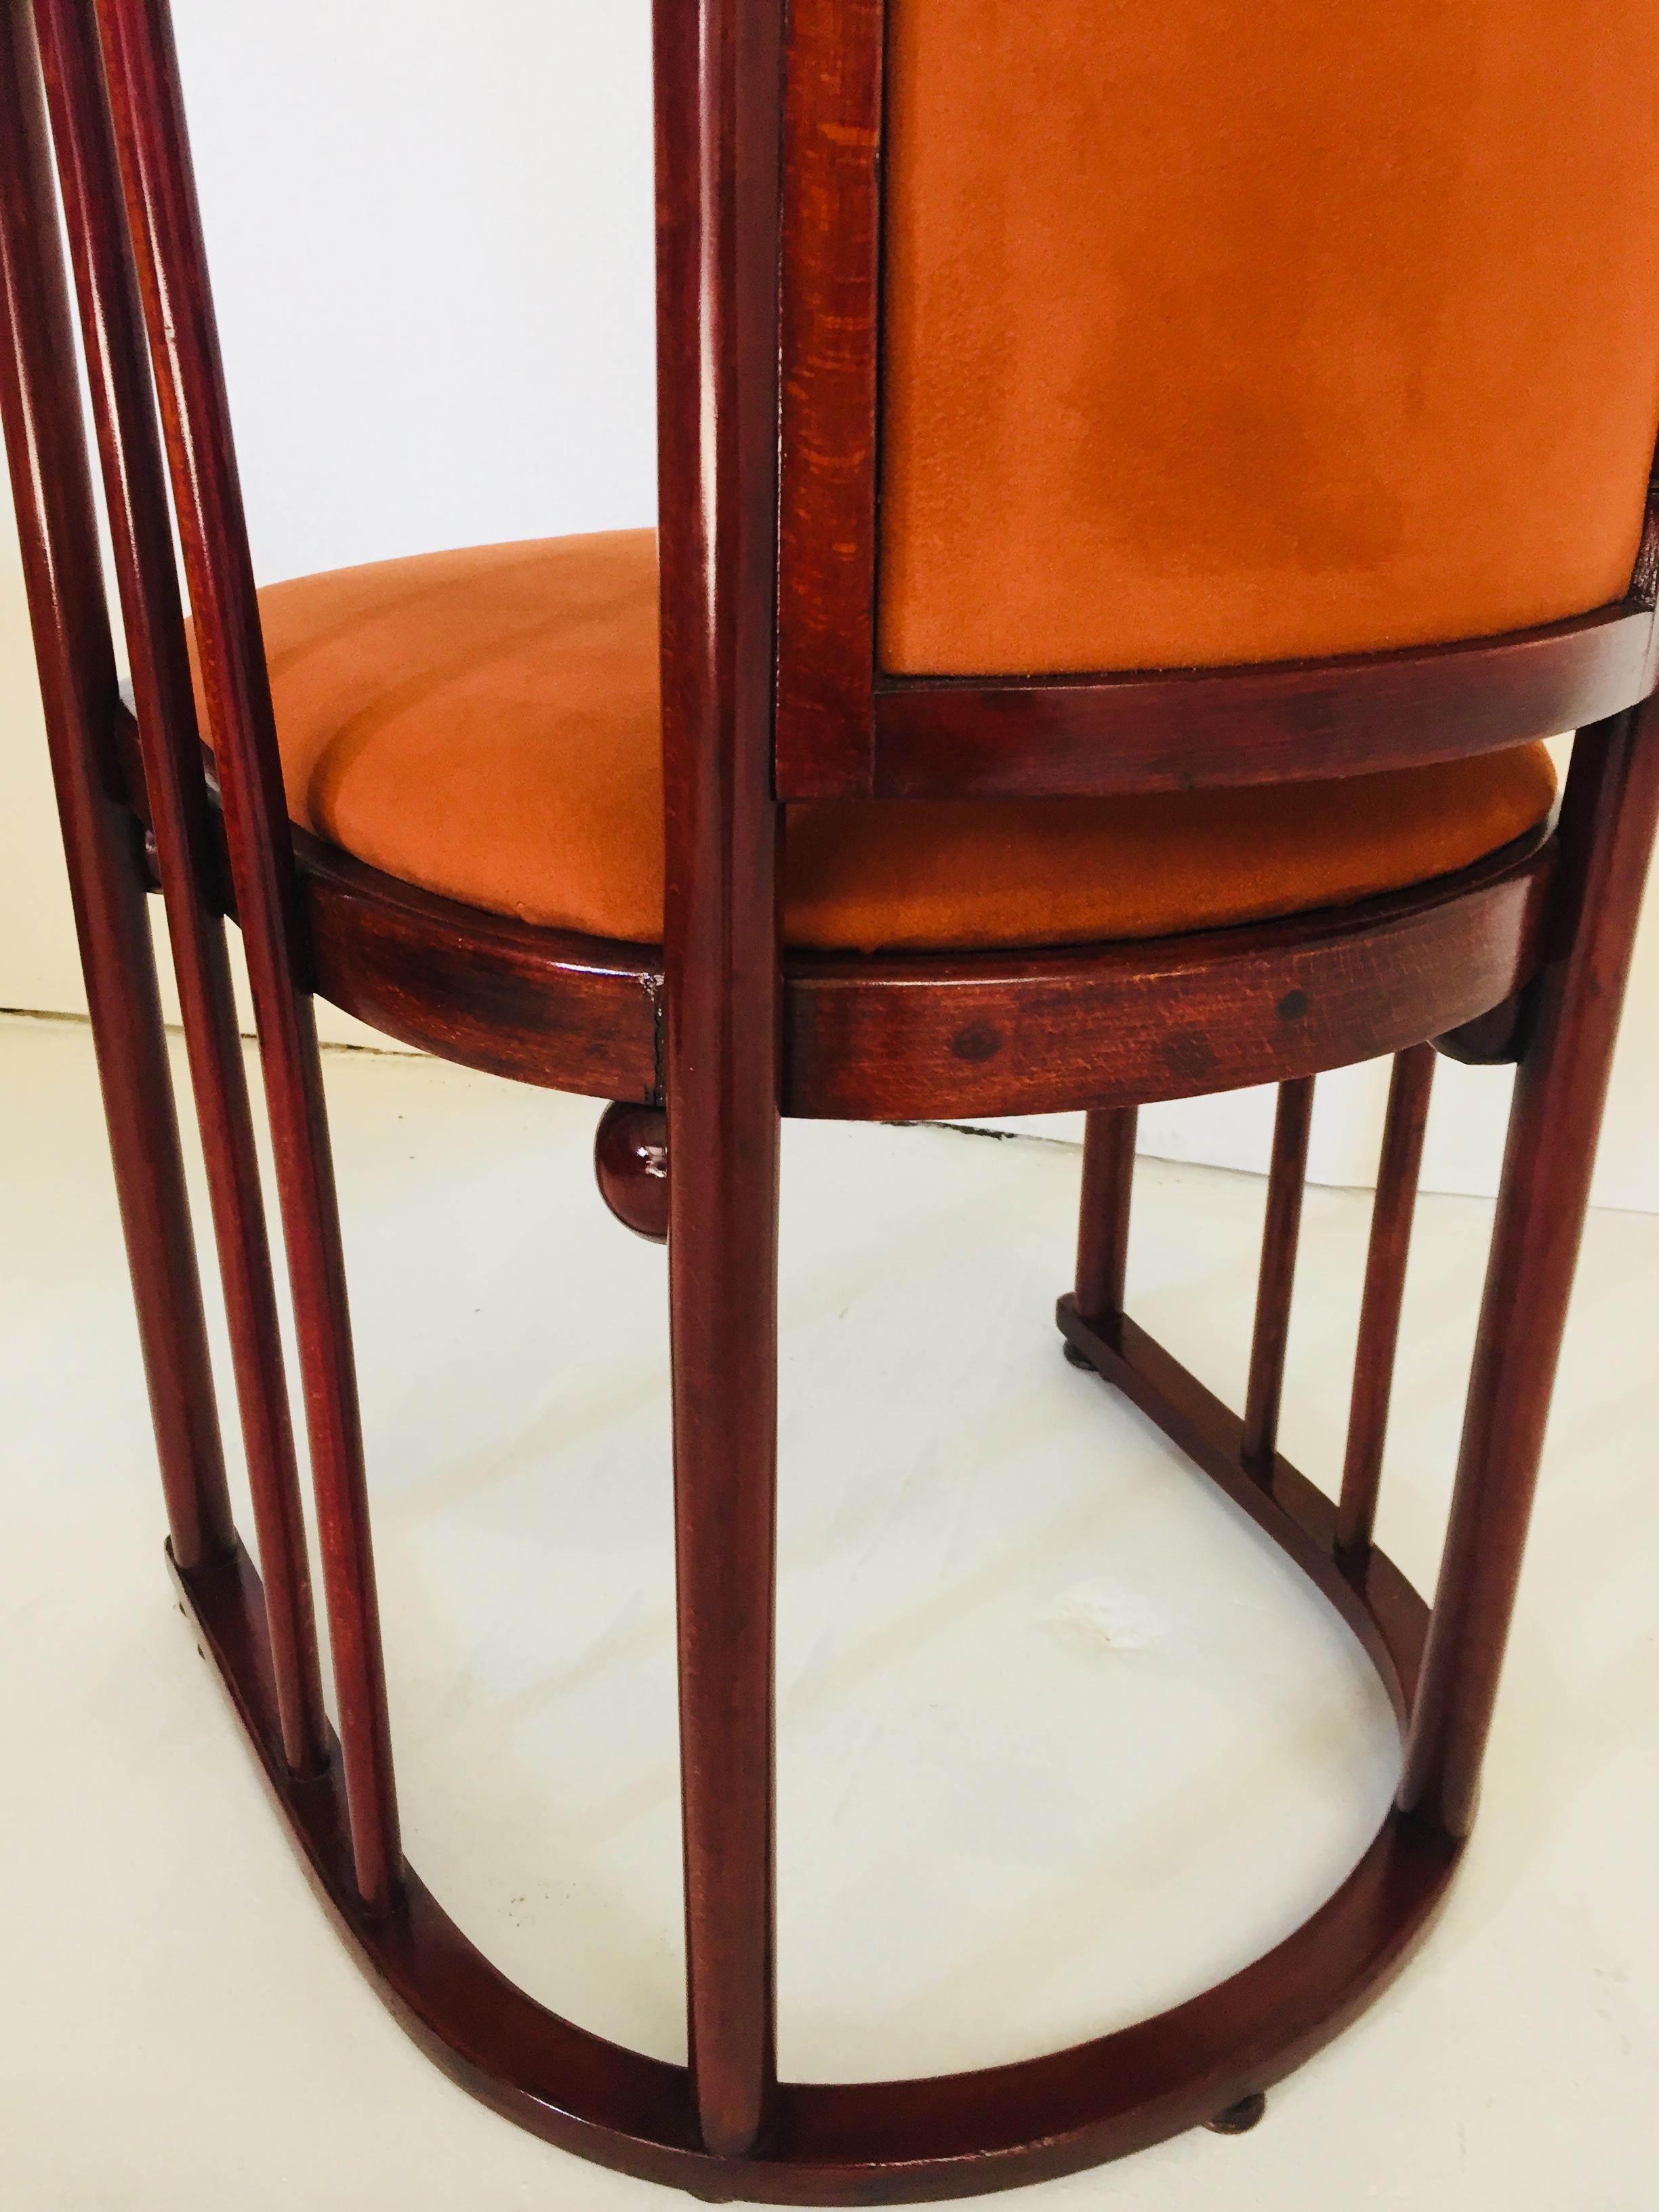 20th Century Austrian Art Nouveau Barrel Chair Josef Hoffmann Bent Wood for Kohn